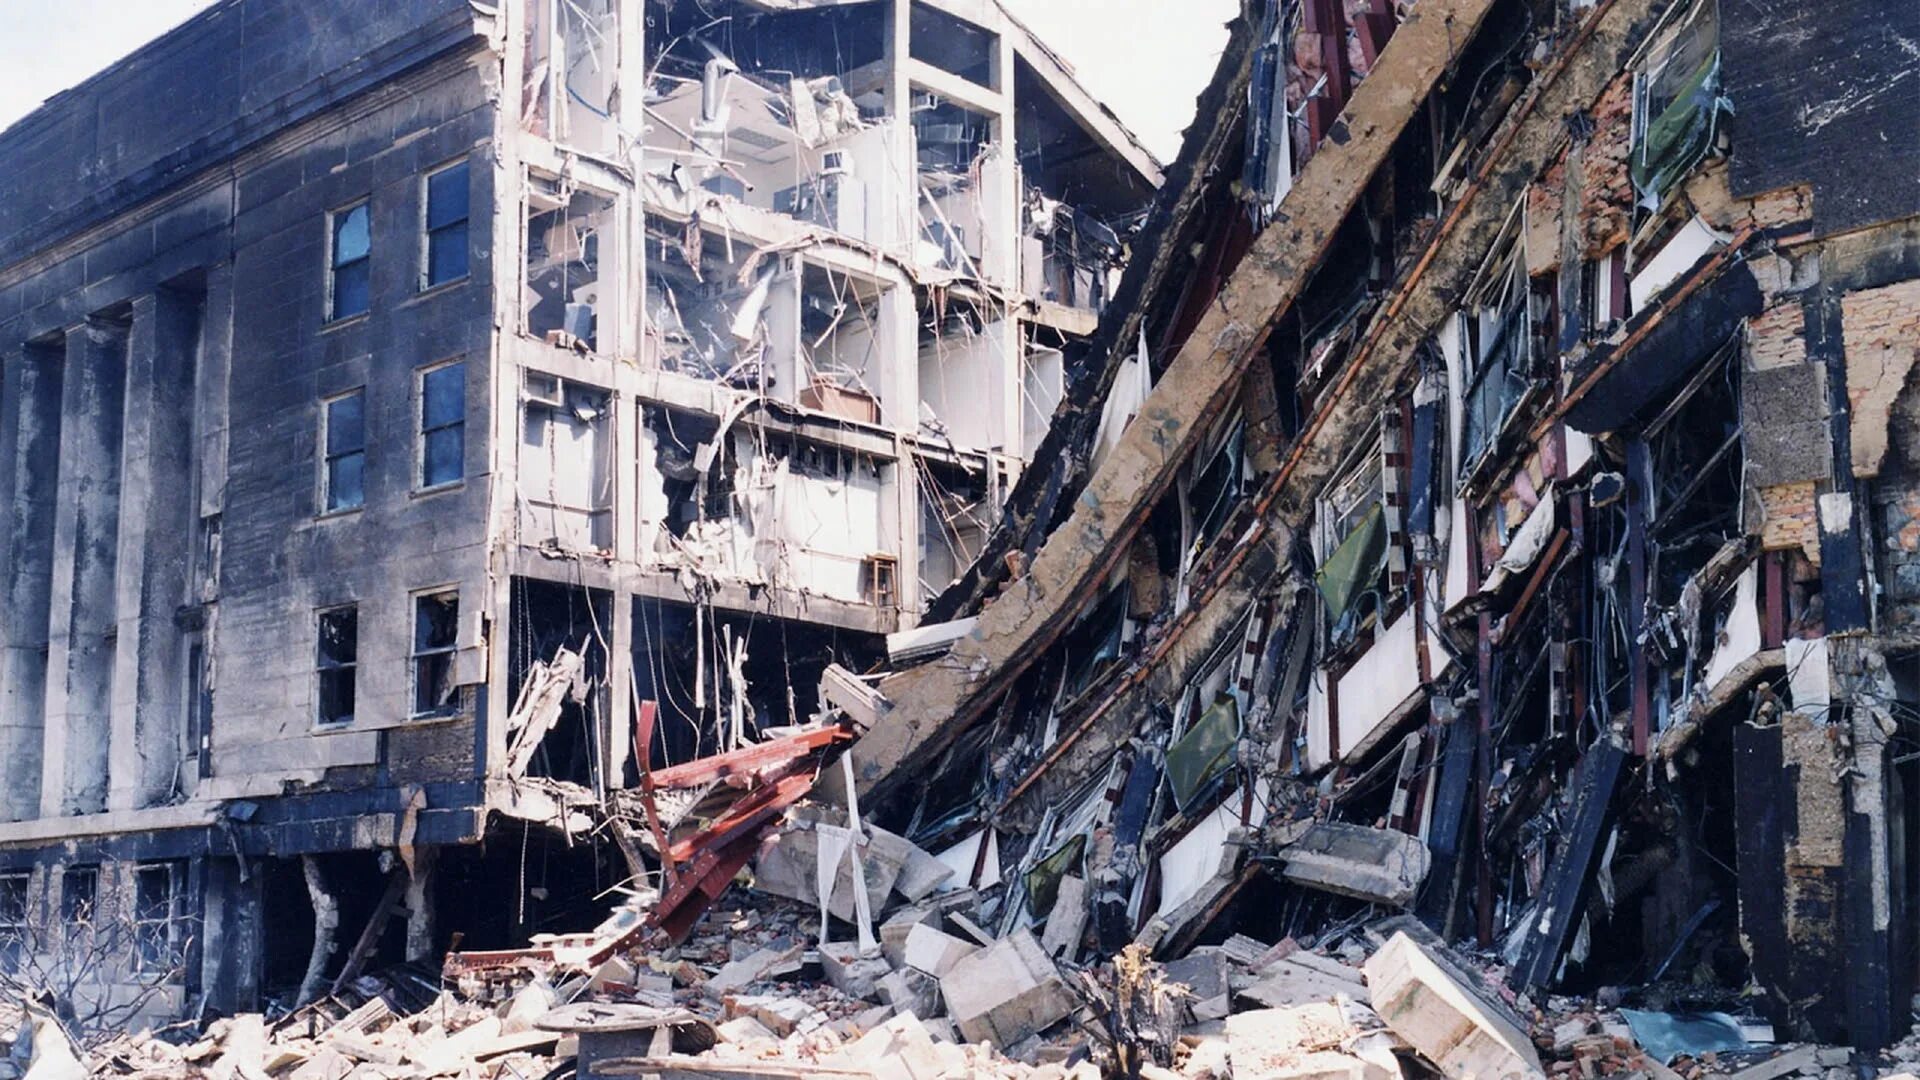 Пентагон 11.09.2001. Разрушенный Пентагон 11 сентября. 11 Сентября 2001 здание Пентагона.